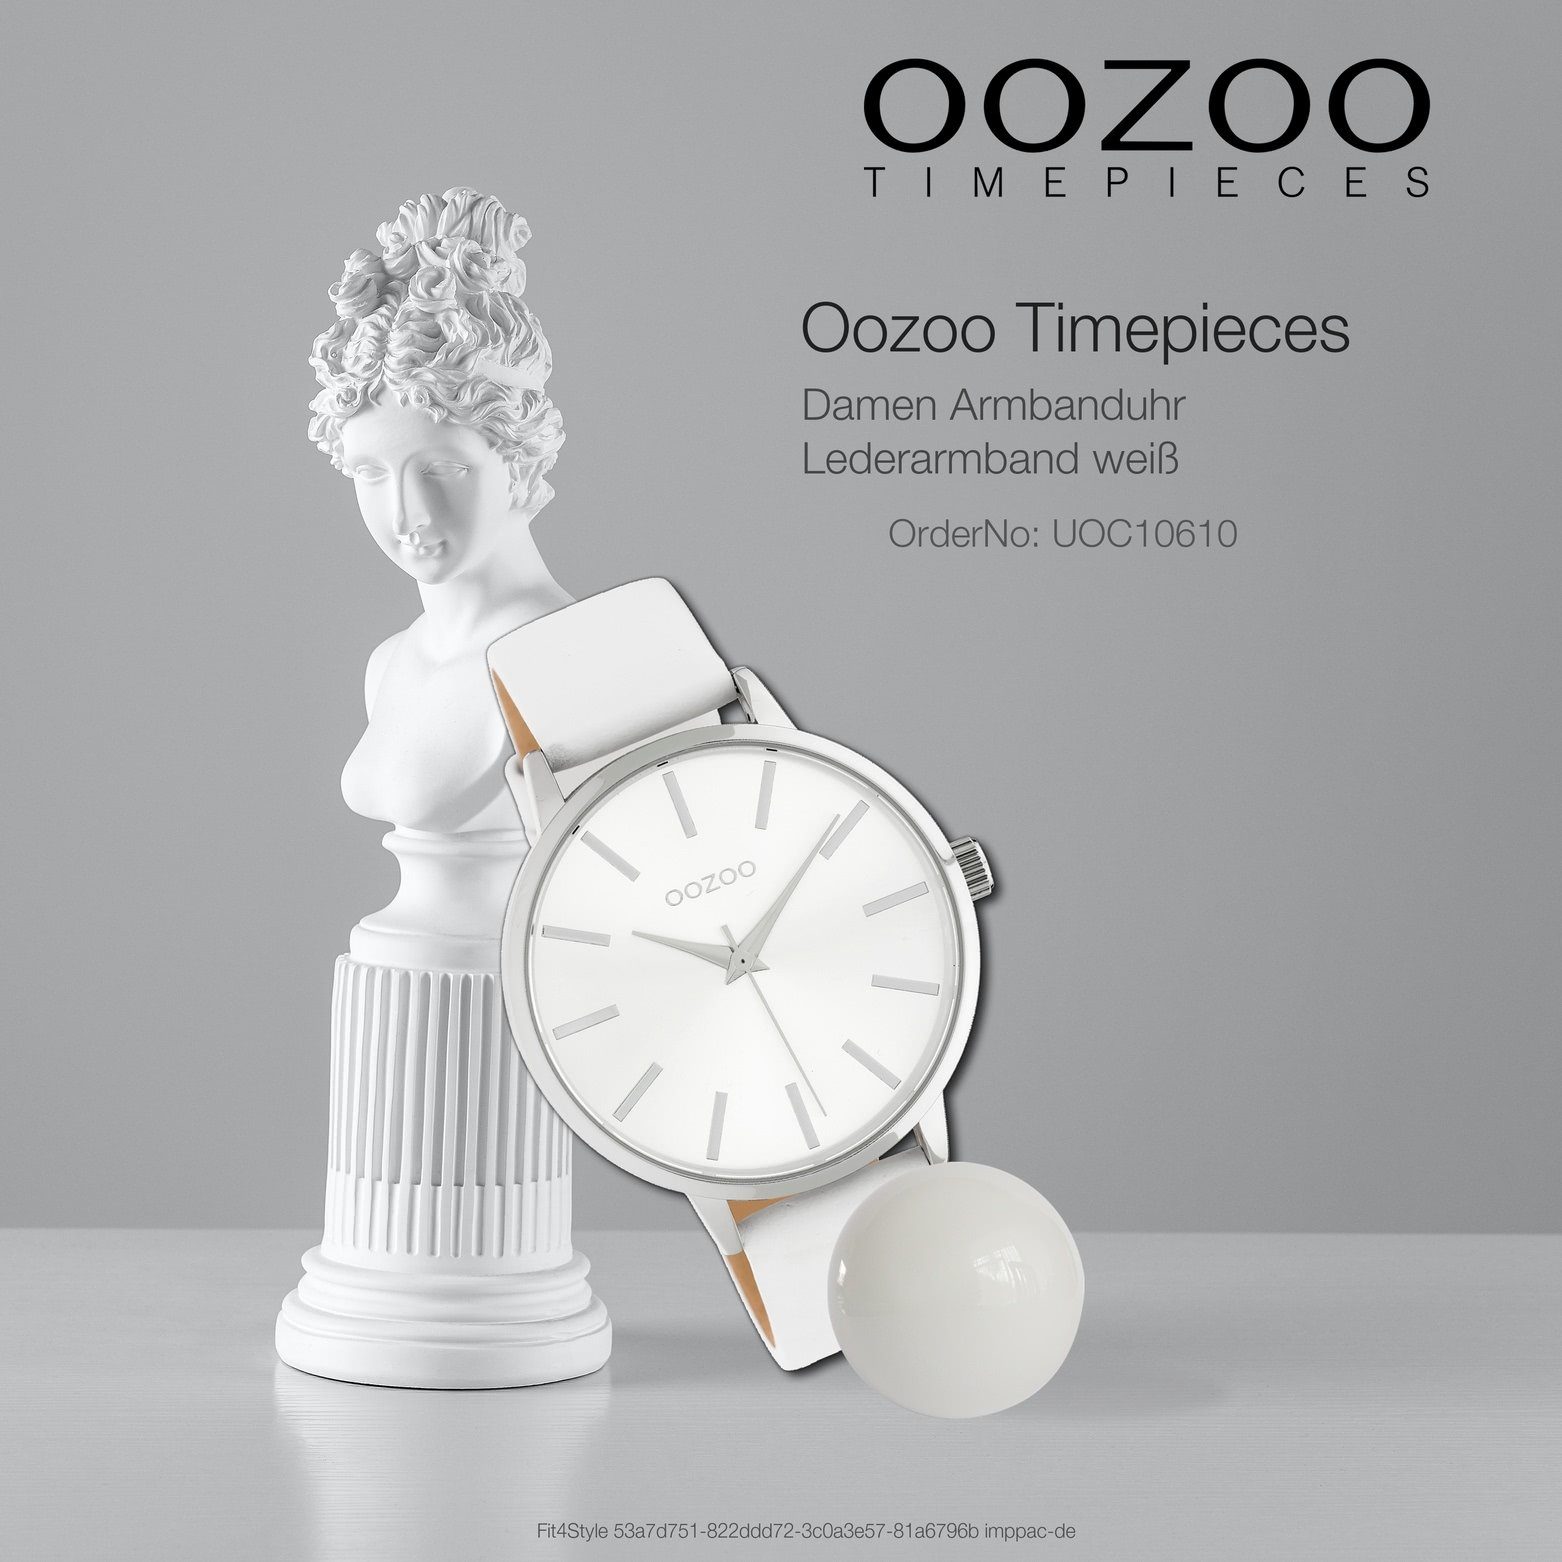 42mm) weiß, Damen Quarzuhr Fashion-Style Oozoo (ca. rund, groß Armbanduhr Lederarmband, Damenuhr OOZOO